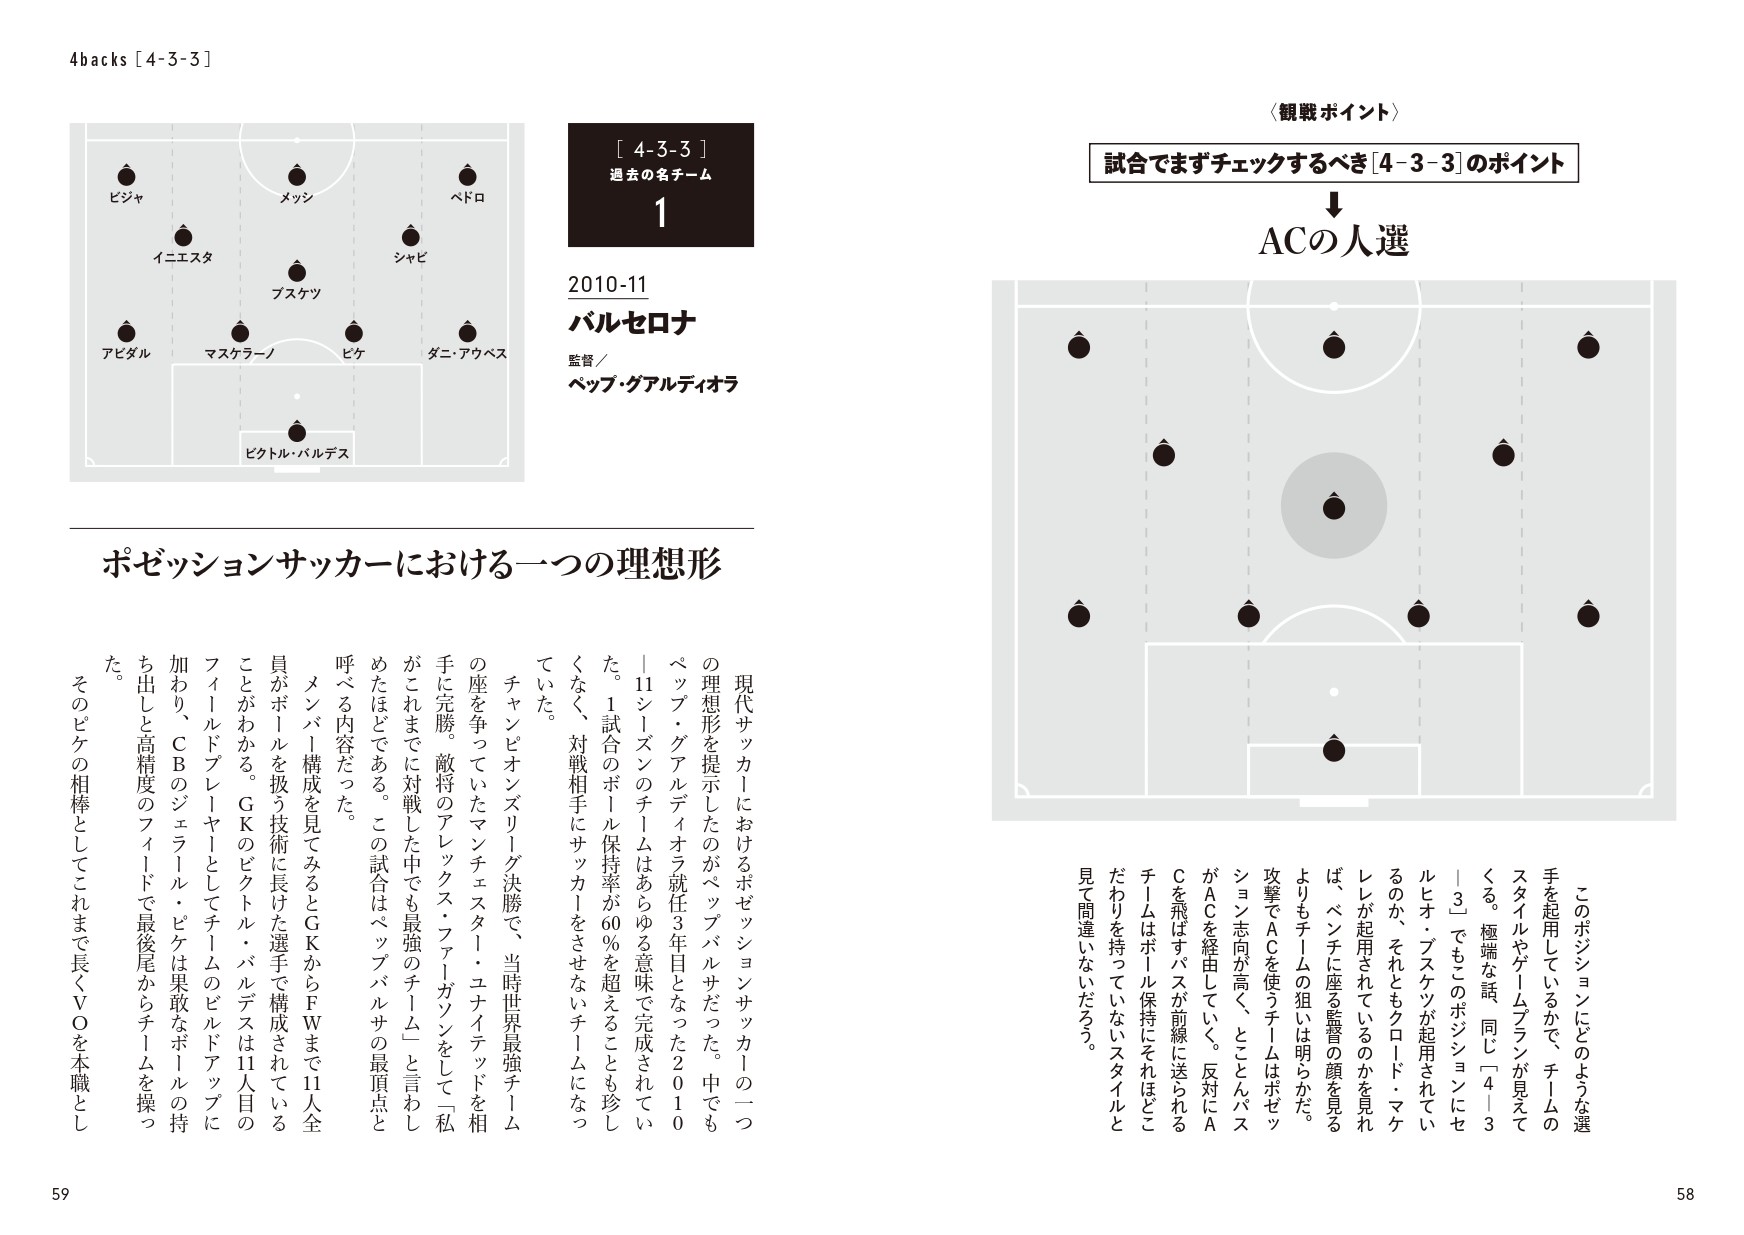 年間1500試合を観戦する変態による変態フォーメーション本 サッカーフォーメーション図鑑 が2月15日発売 プレスリリース コラム ニューズウィーク日本版 オフィシャルサイト